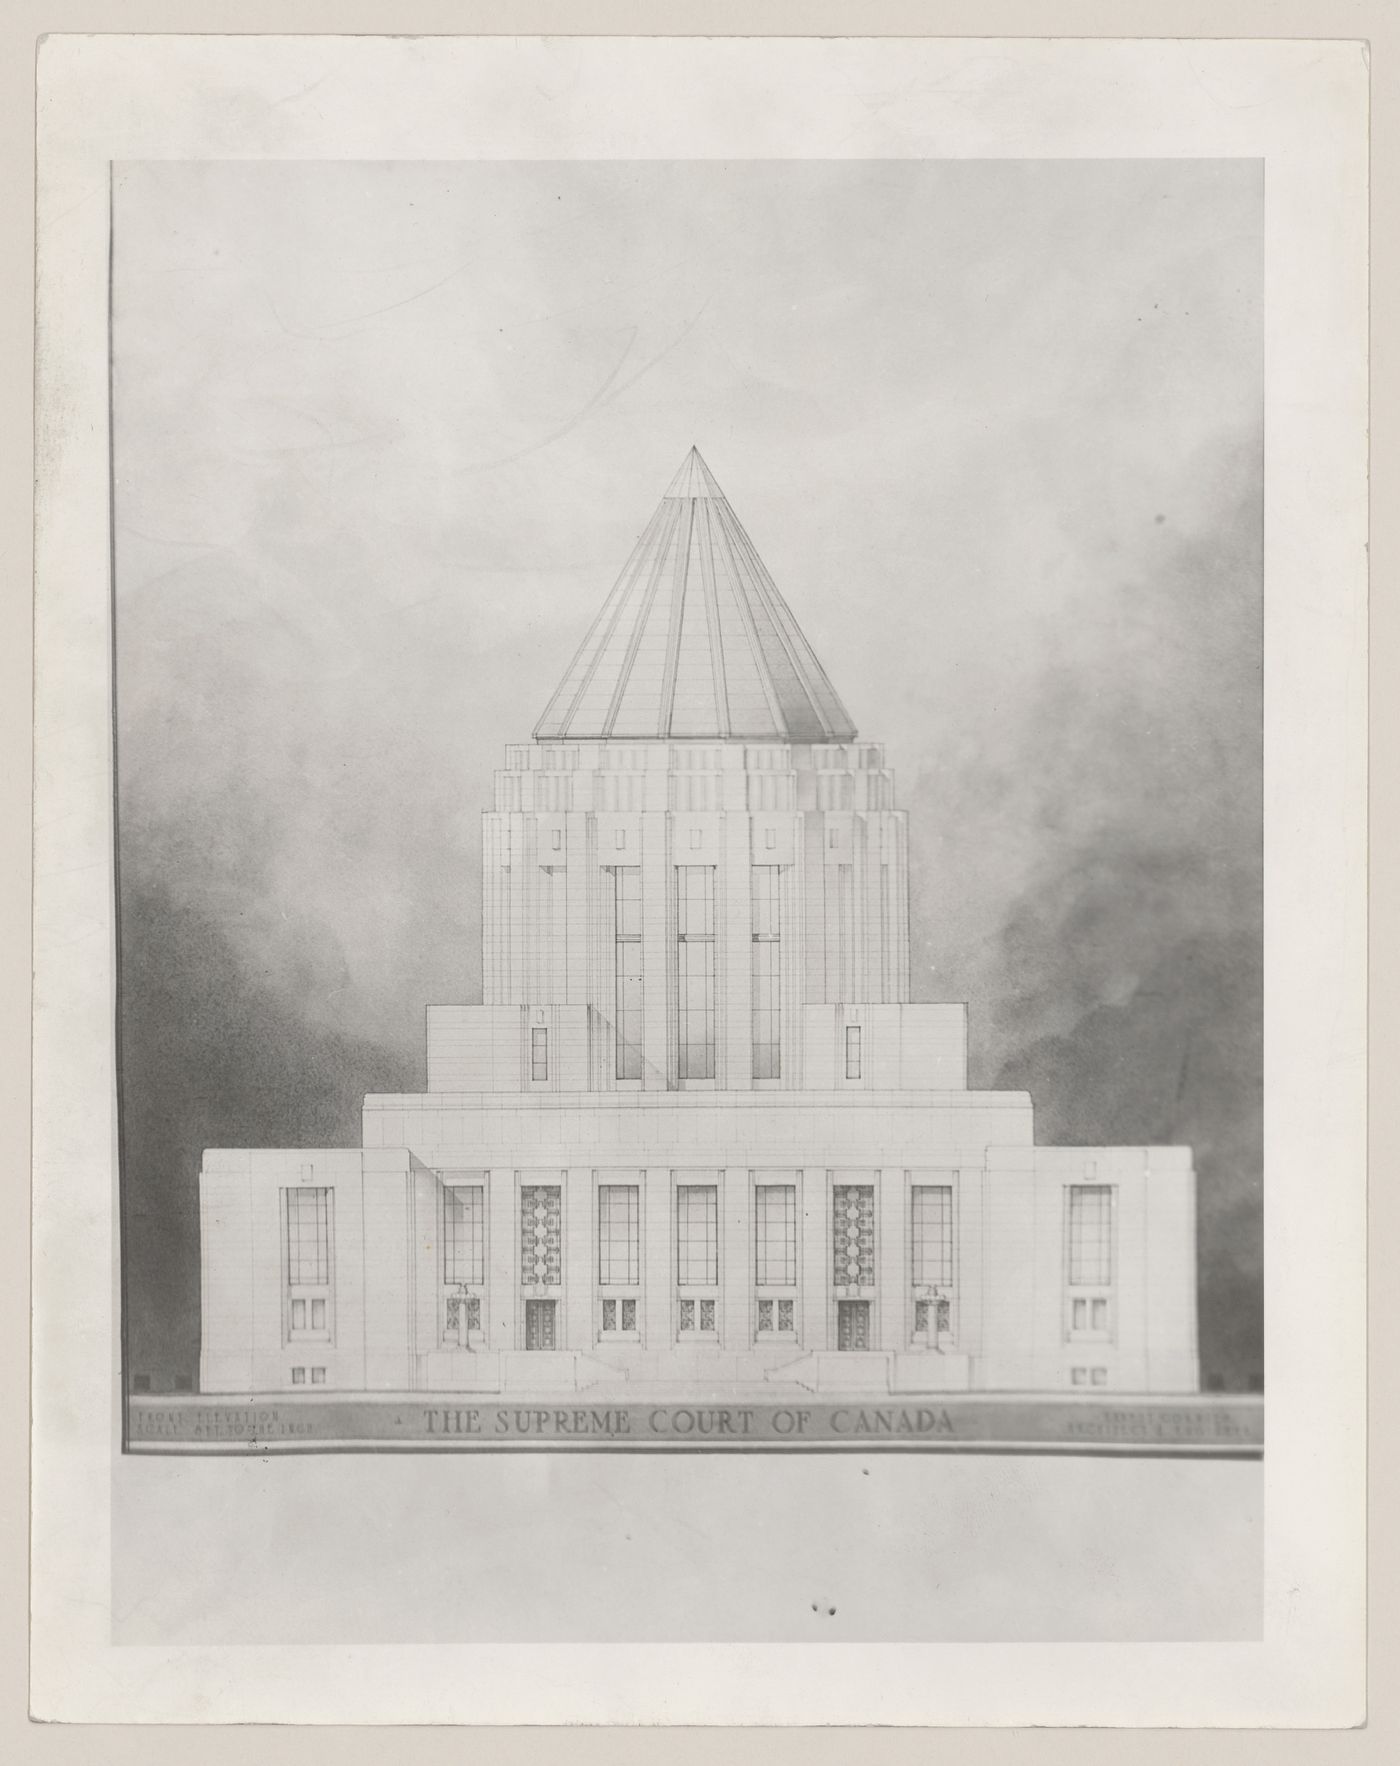 Photographie d'un dessin de présentation titré "The Supreme Court of Canada", Cour suprême du Canada, Ottawa, Ontario, Canada